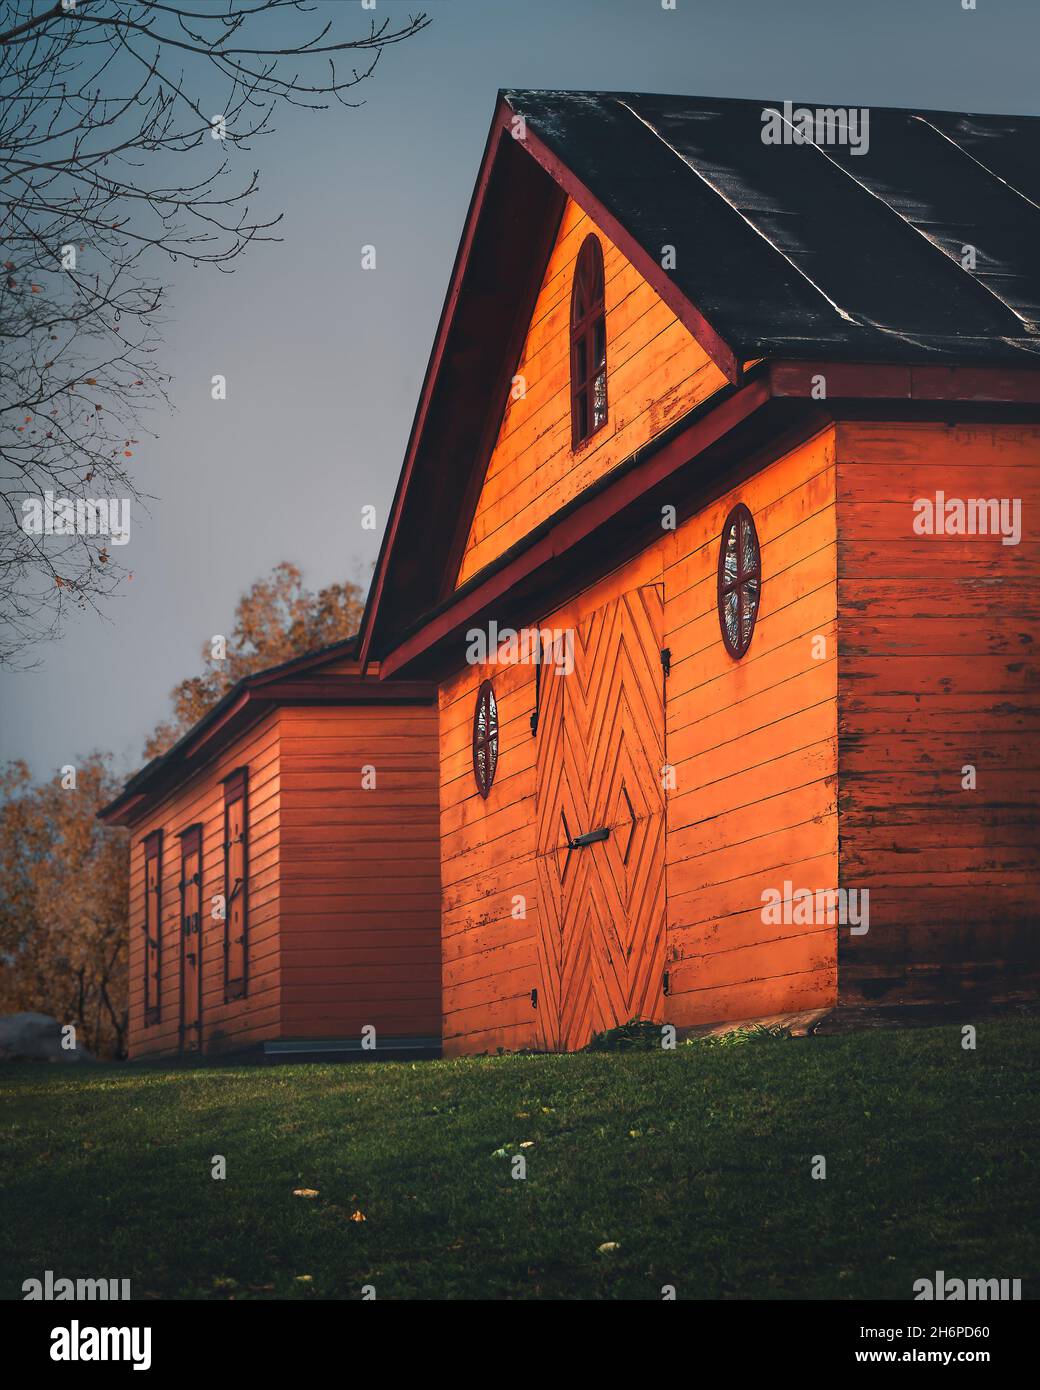 Vieilles petites maisons en bois peintes en orange.Style scandinave.Architecture finlandaise traditionnelle.Façades de bâtiments colorées du village de Finlande Banque D'Images